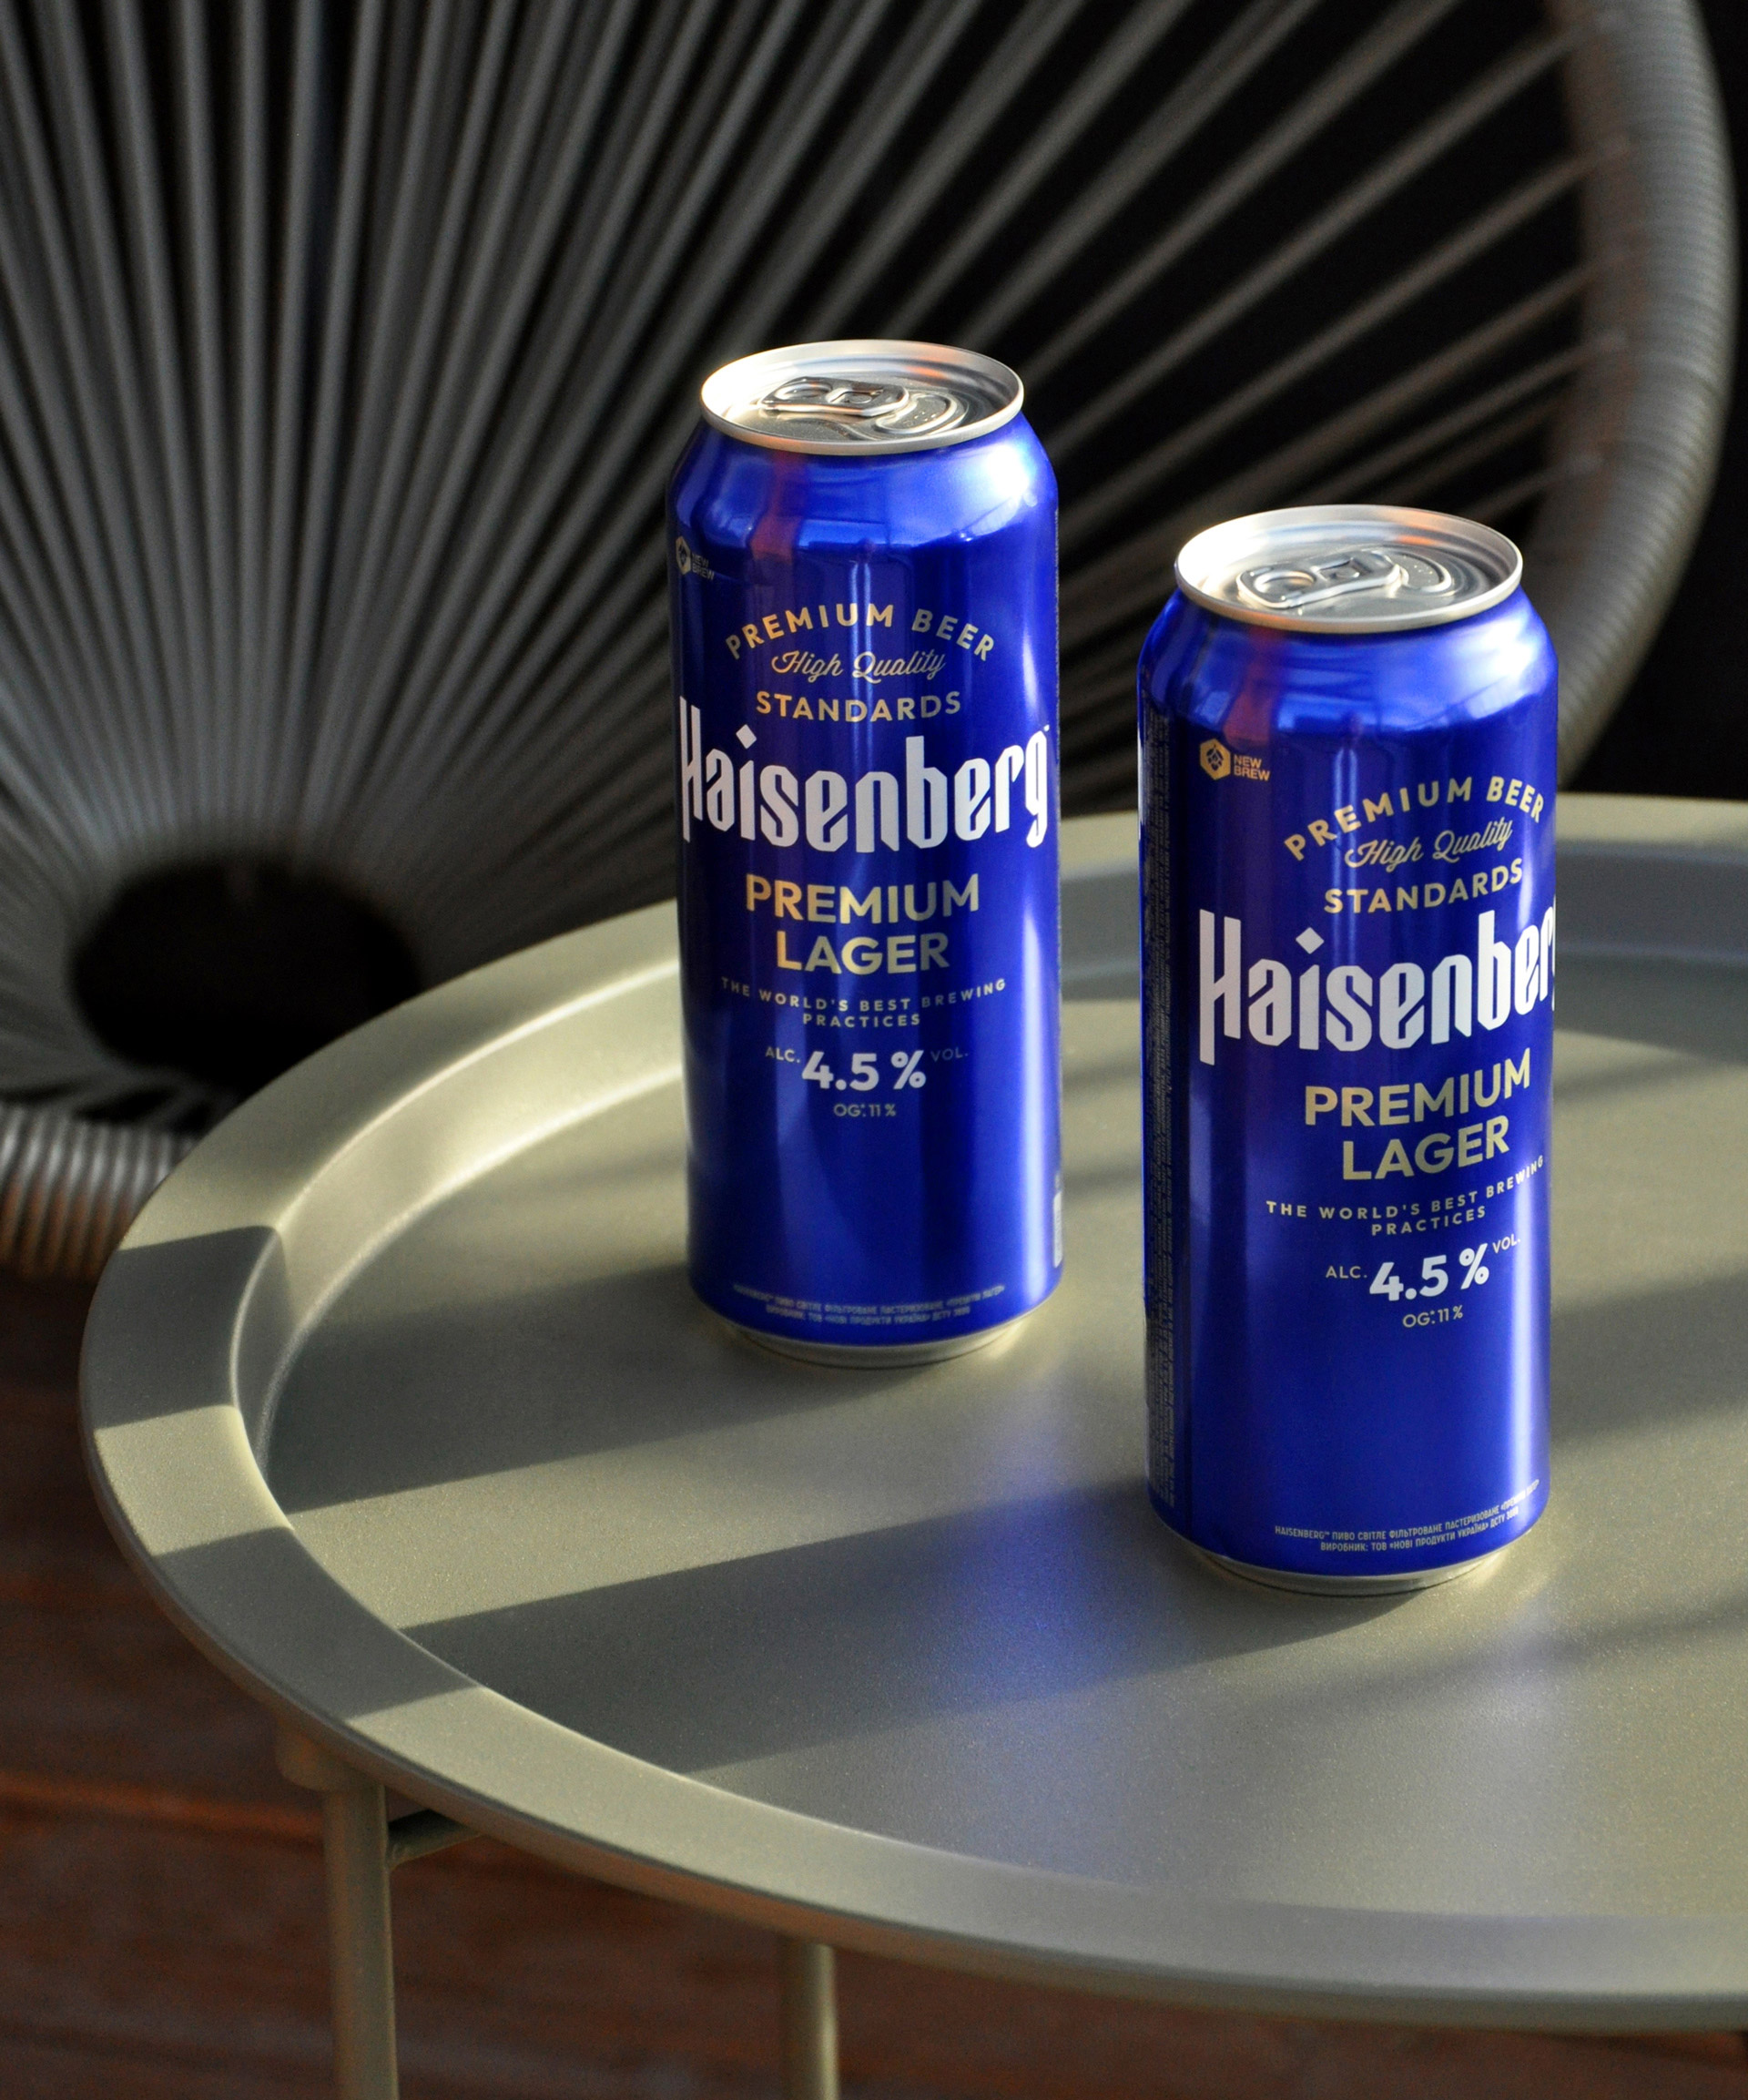 Haisenberg New Brand and Packaging Design